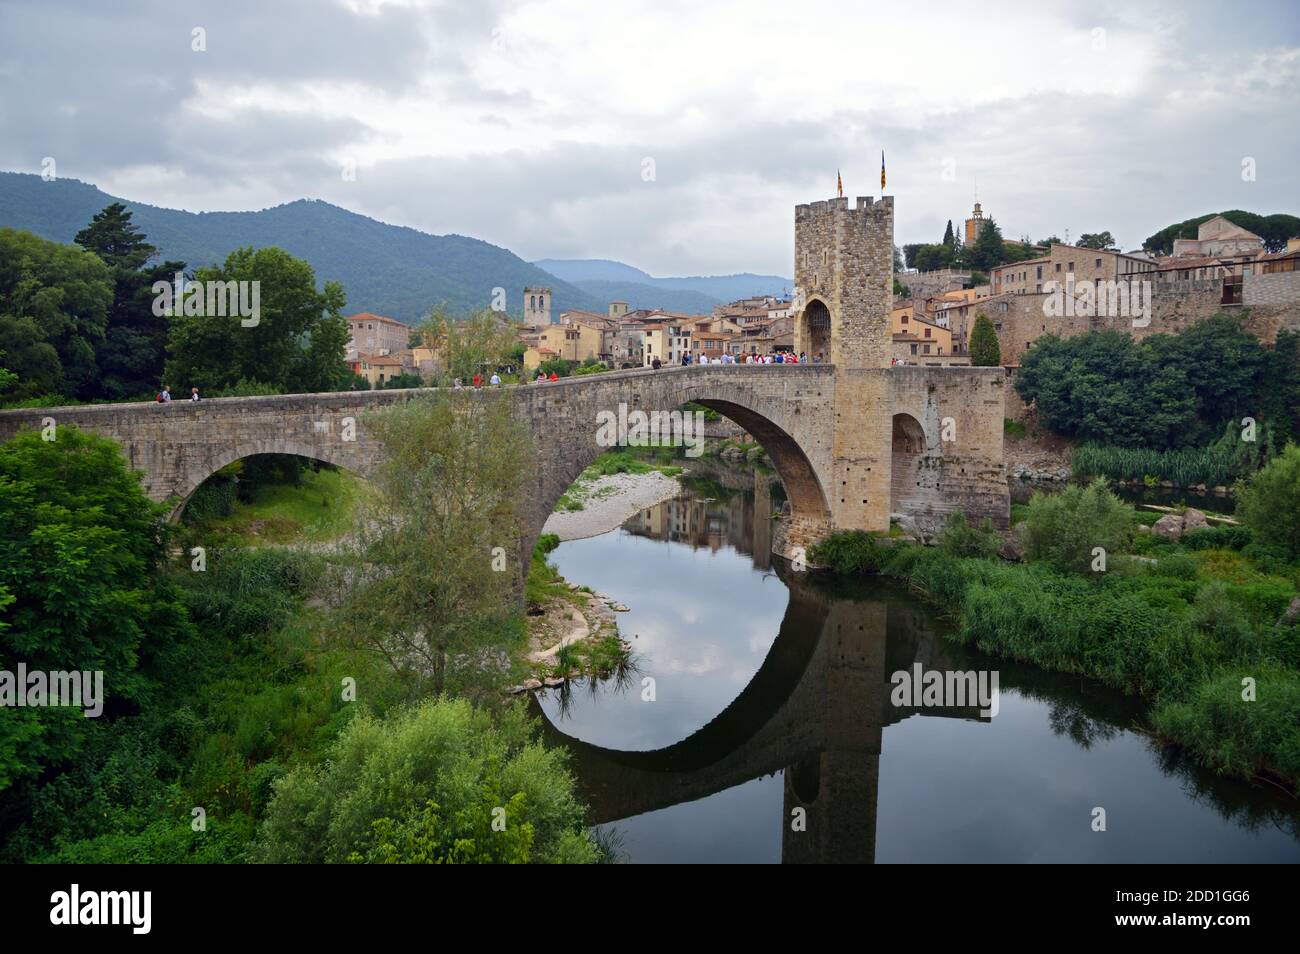 Besalú, une ville de la comarca de Garrotxa, Catalogne, Espagne, est désignée propriété historique nationale. Voici le pont du XIIe siècle. Banque D'Images